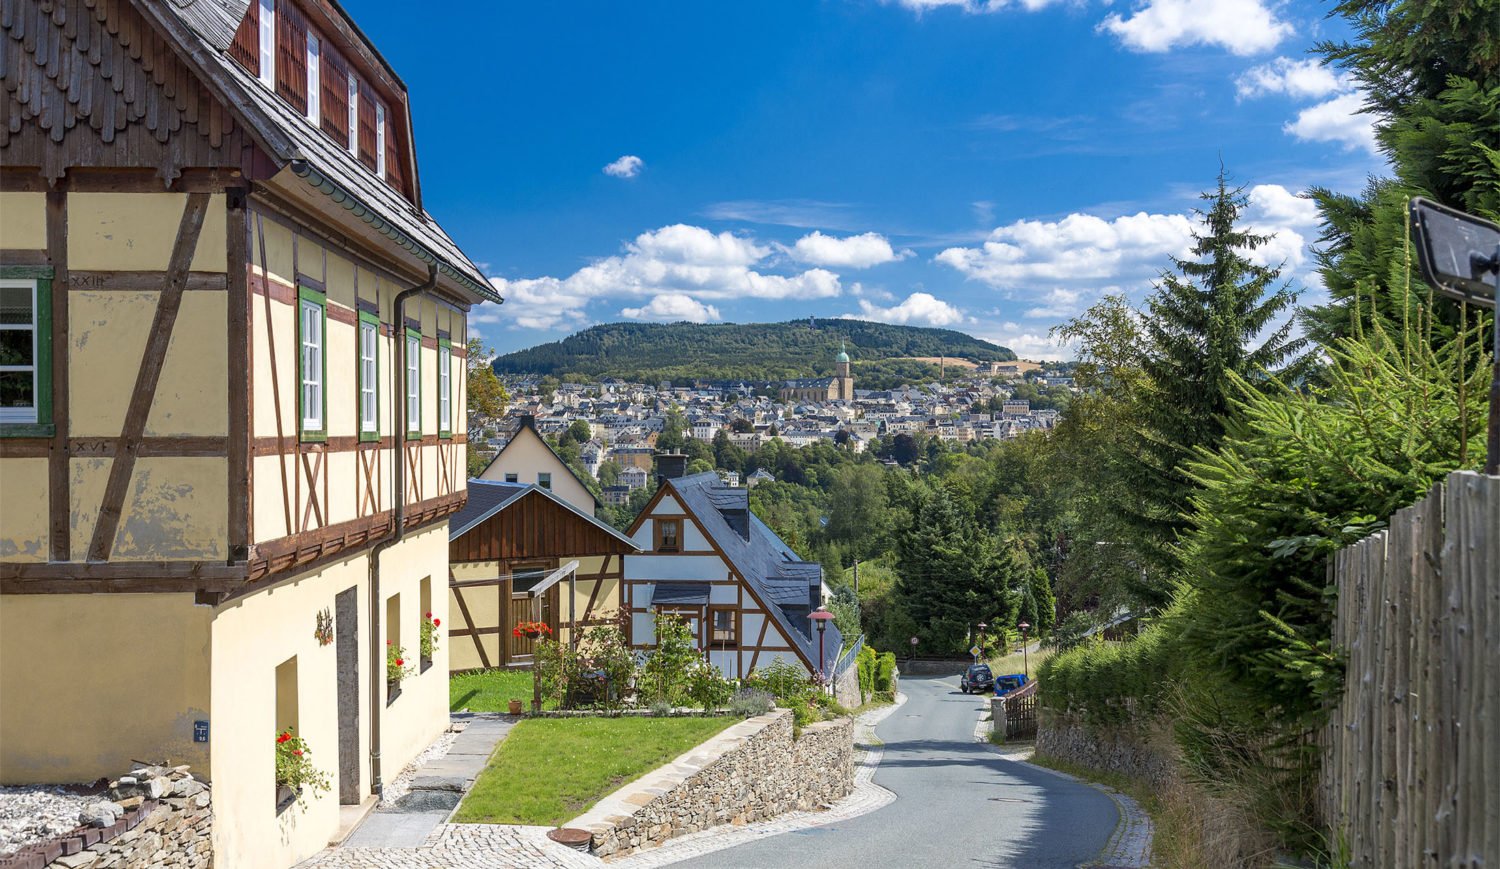 Blick auf Annaberg-Buchholz – liebenswerte und altehrwürdige Stadt im Herzen des Erzgebirges